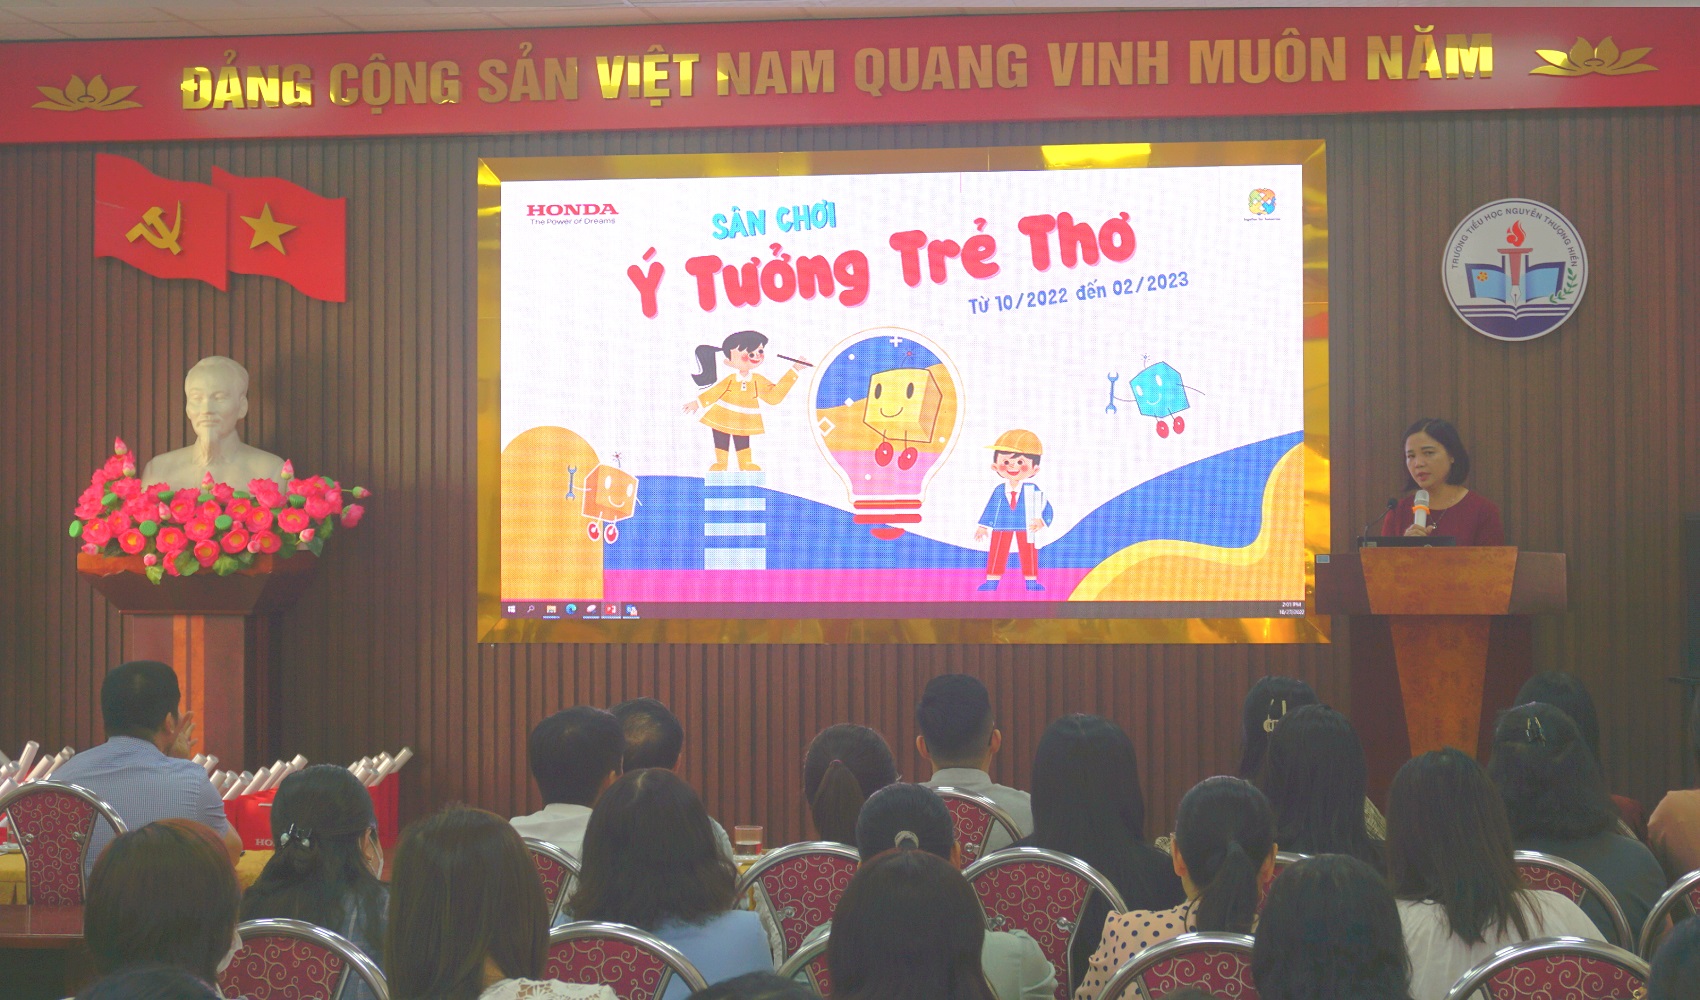 Sân chơi “Ý tưởng trẻ thơ” của Honda Việt Nam khởi động năm thứ 13 trên toàn quốc